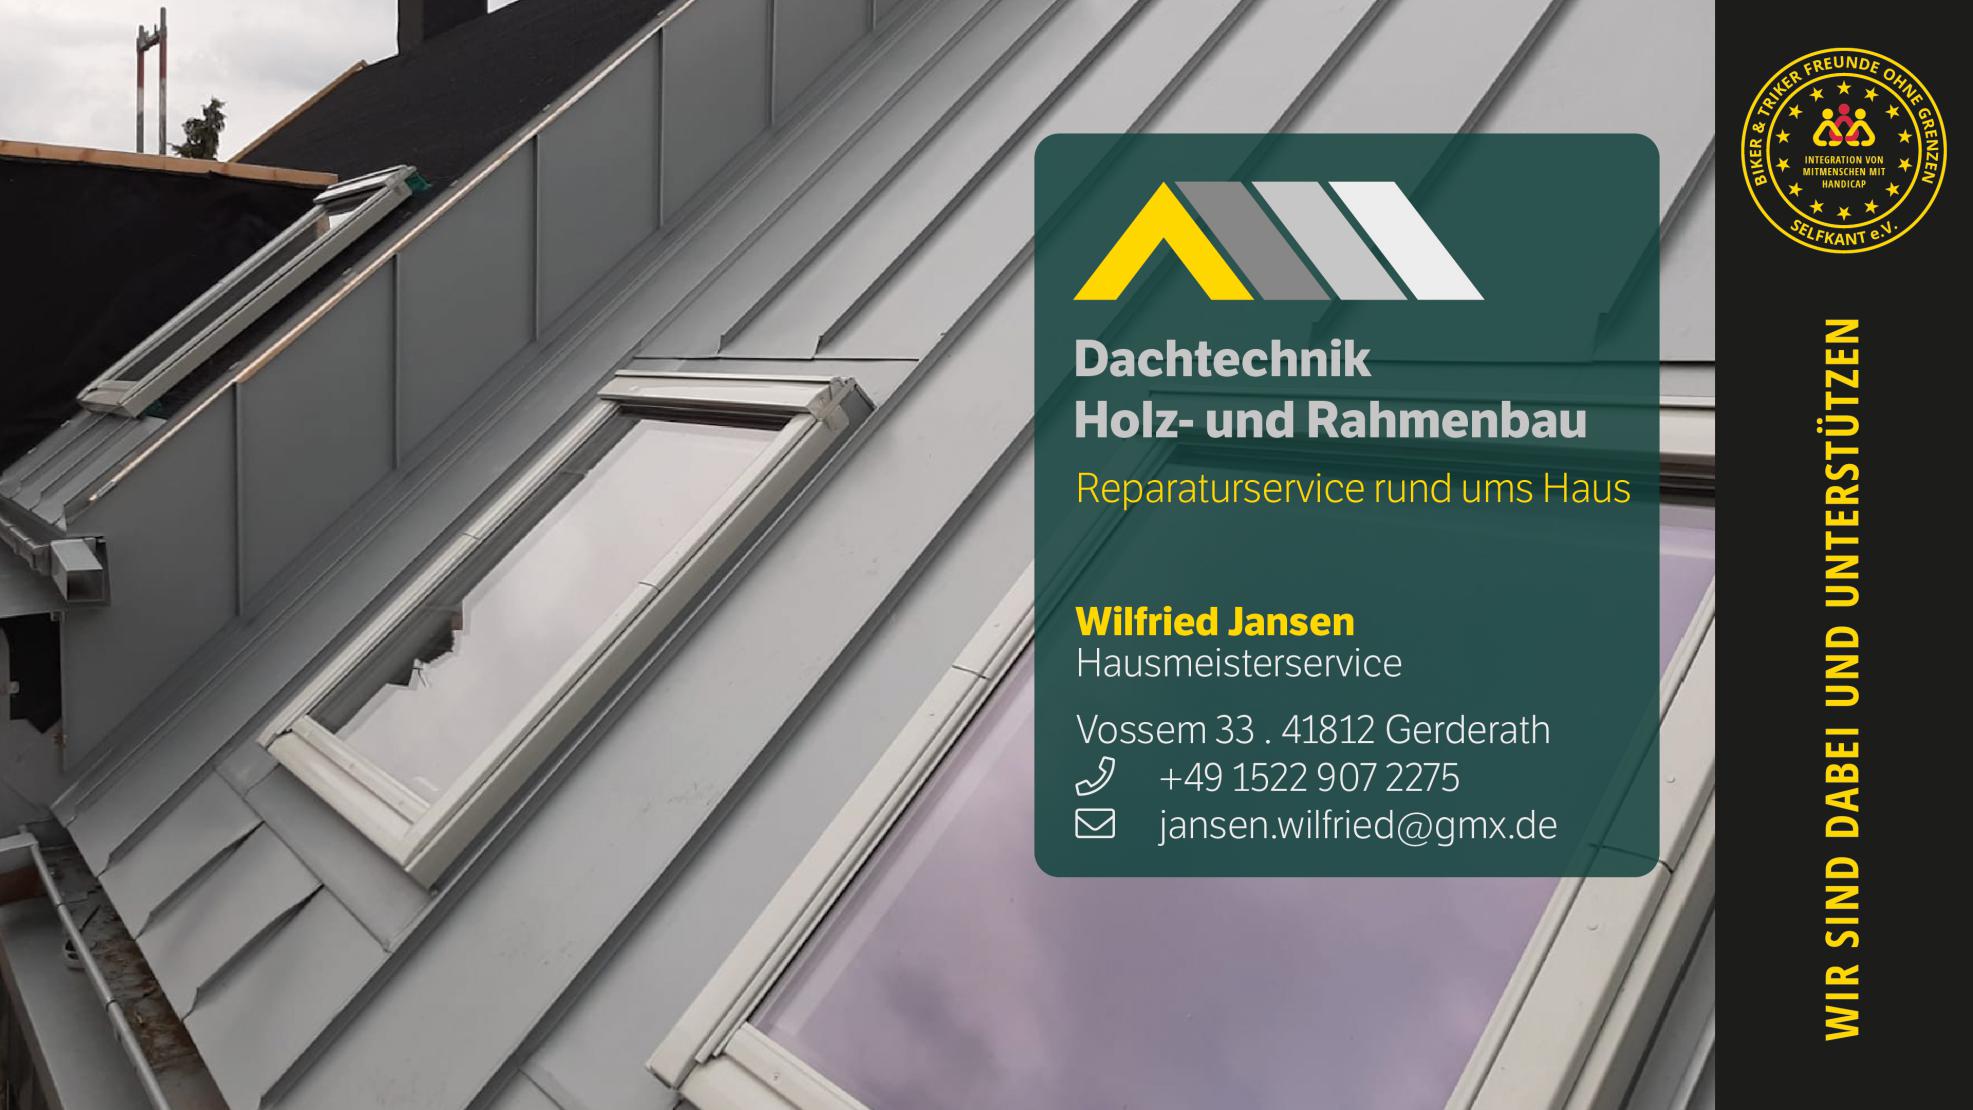 Wilfried Jansen - Dachtechnik / Holz- und Rahmenbau / Hausmeisterservice